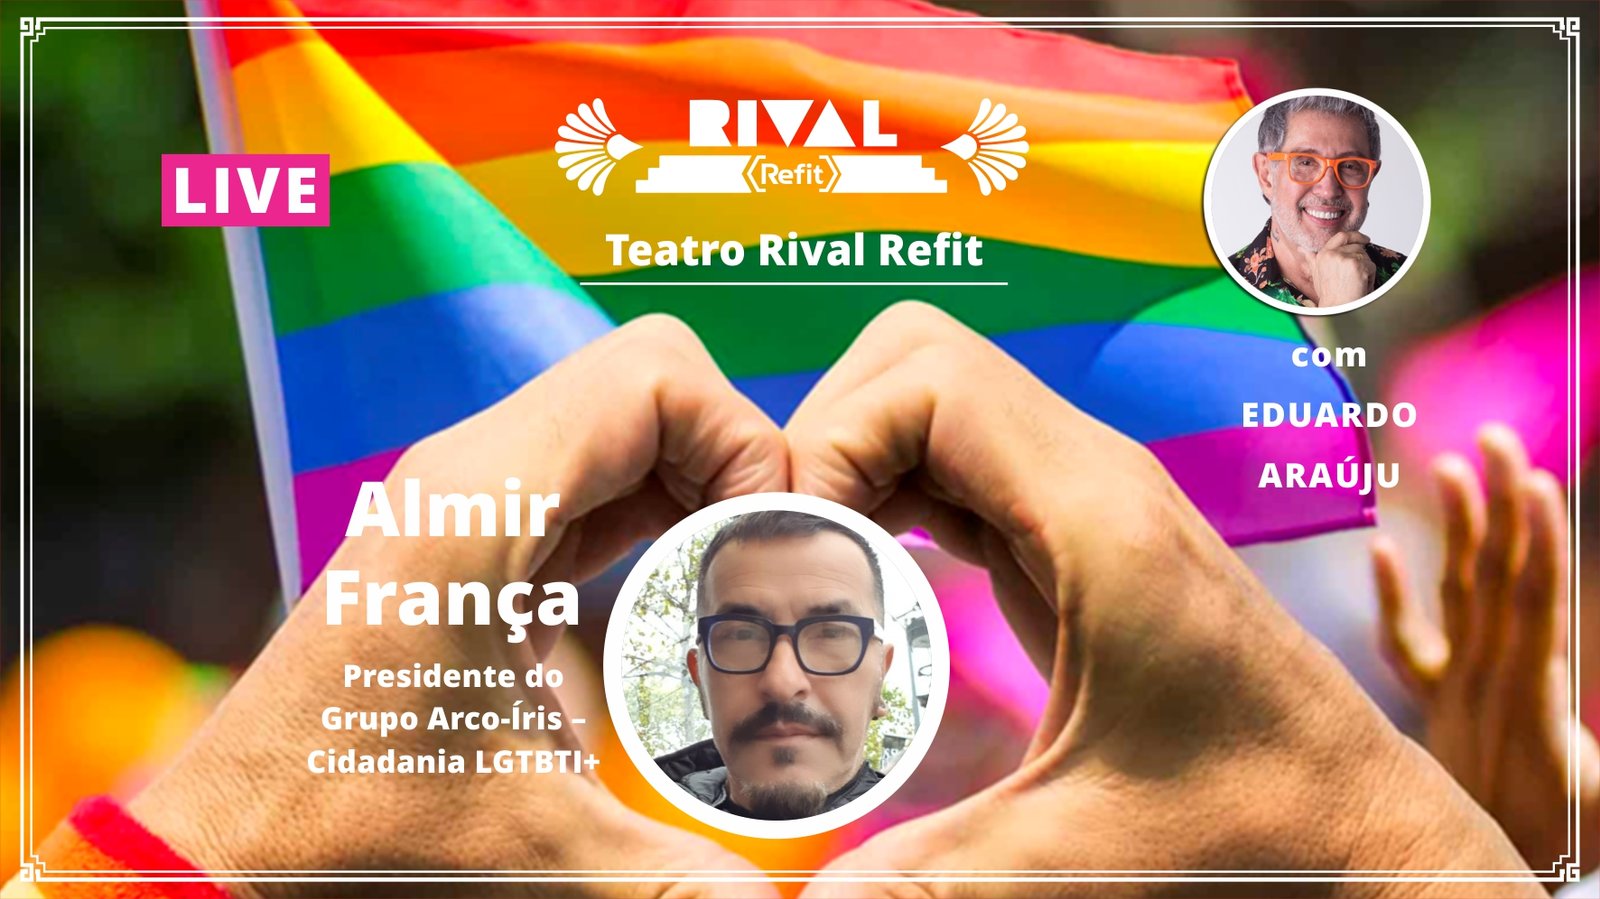 Almir França e a luta LGBTQI+